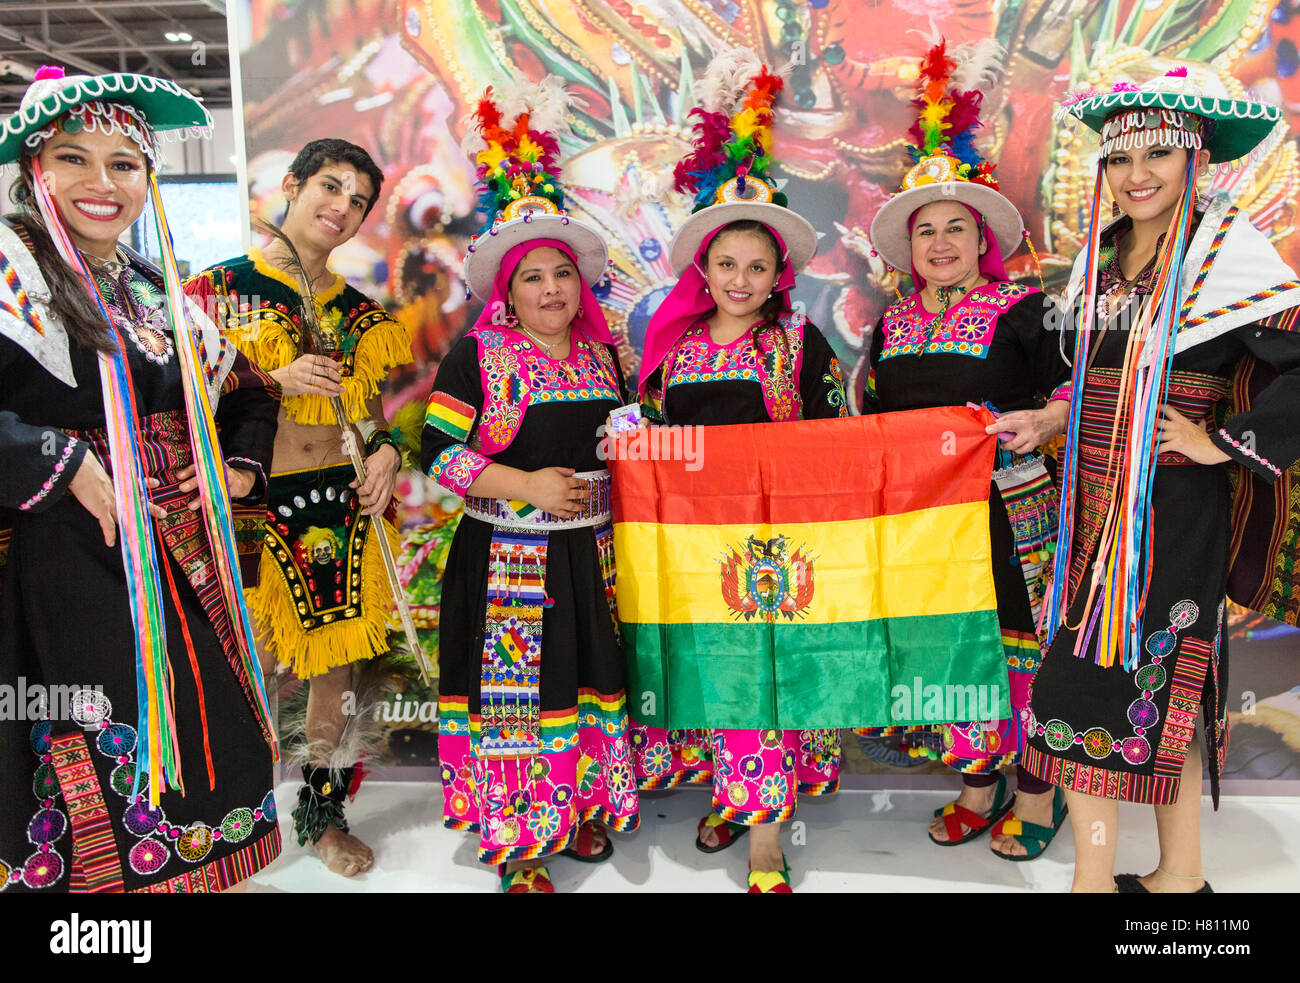 Popolo boliviano in abiti tradizionali World Travel Market London REGNO UNITO Foto Stock